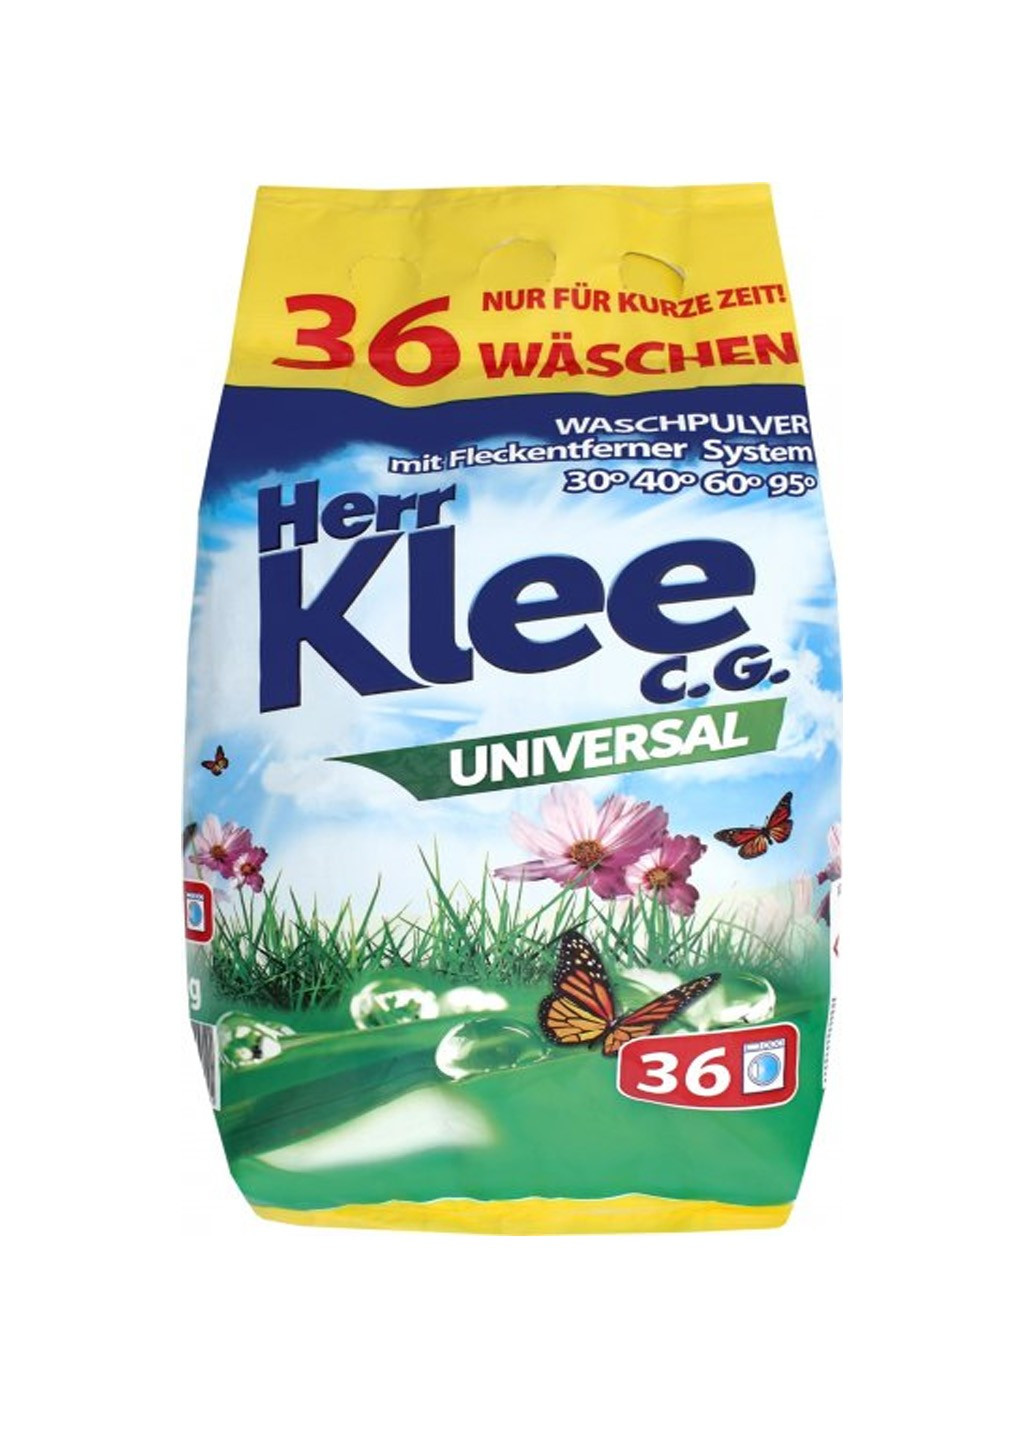 Порошок для стирки universal (3 кг) Klee (264668504)